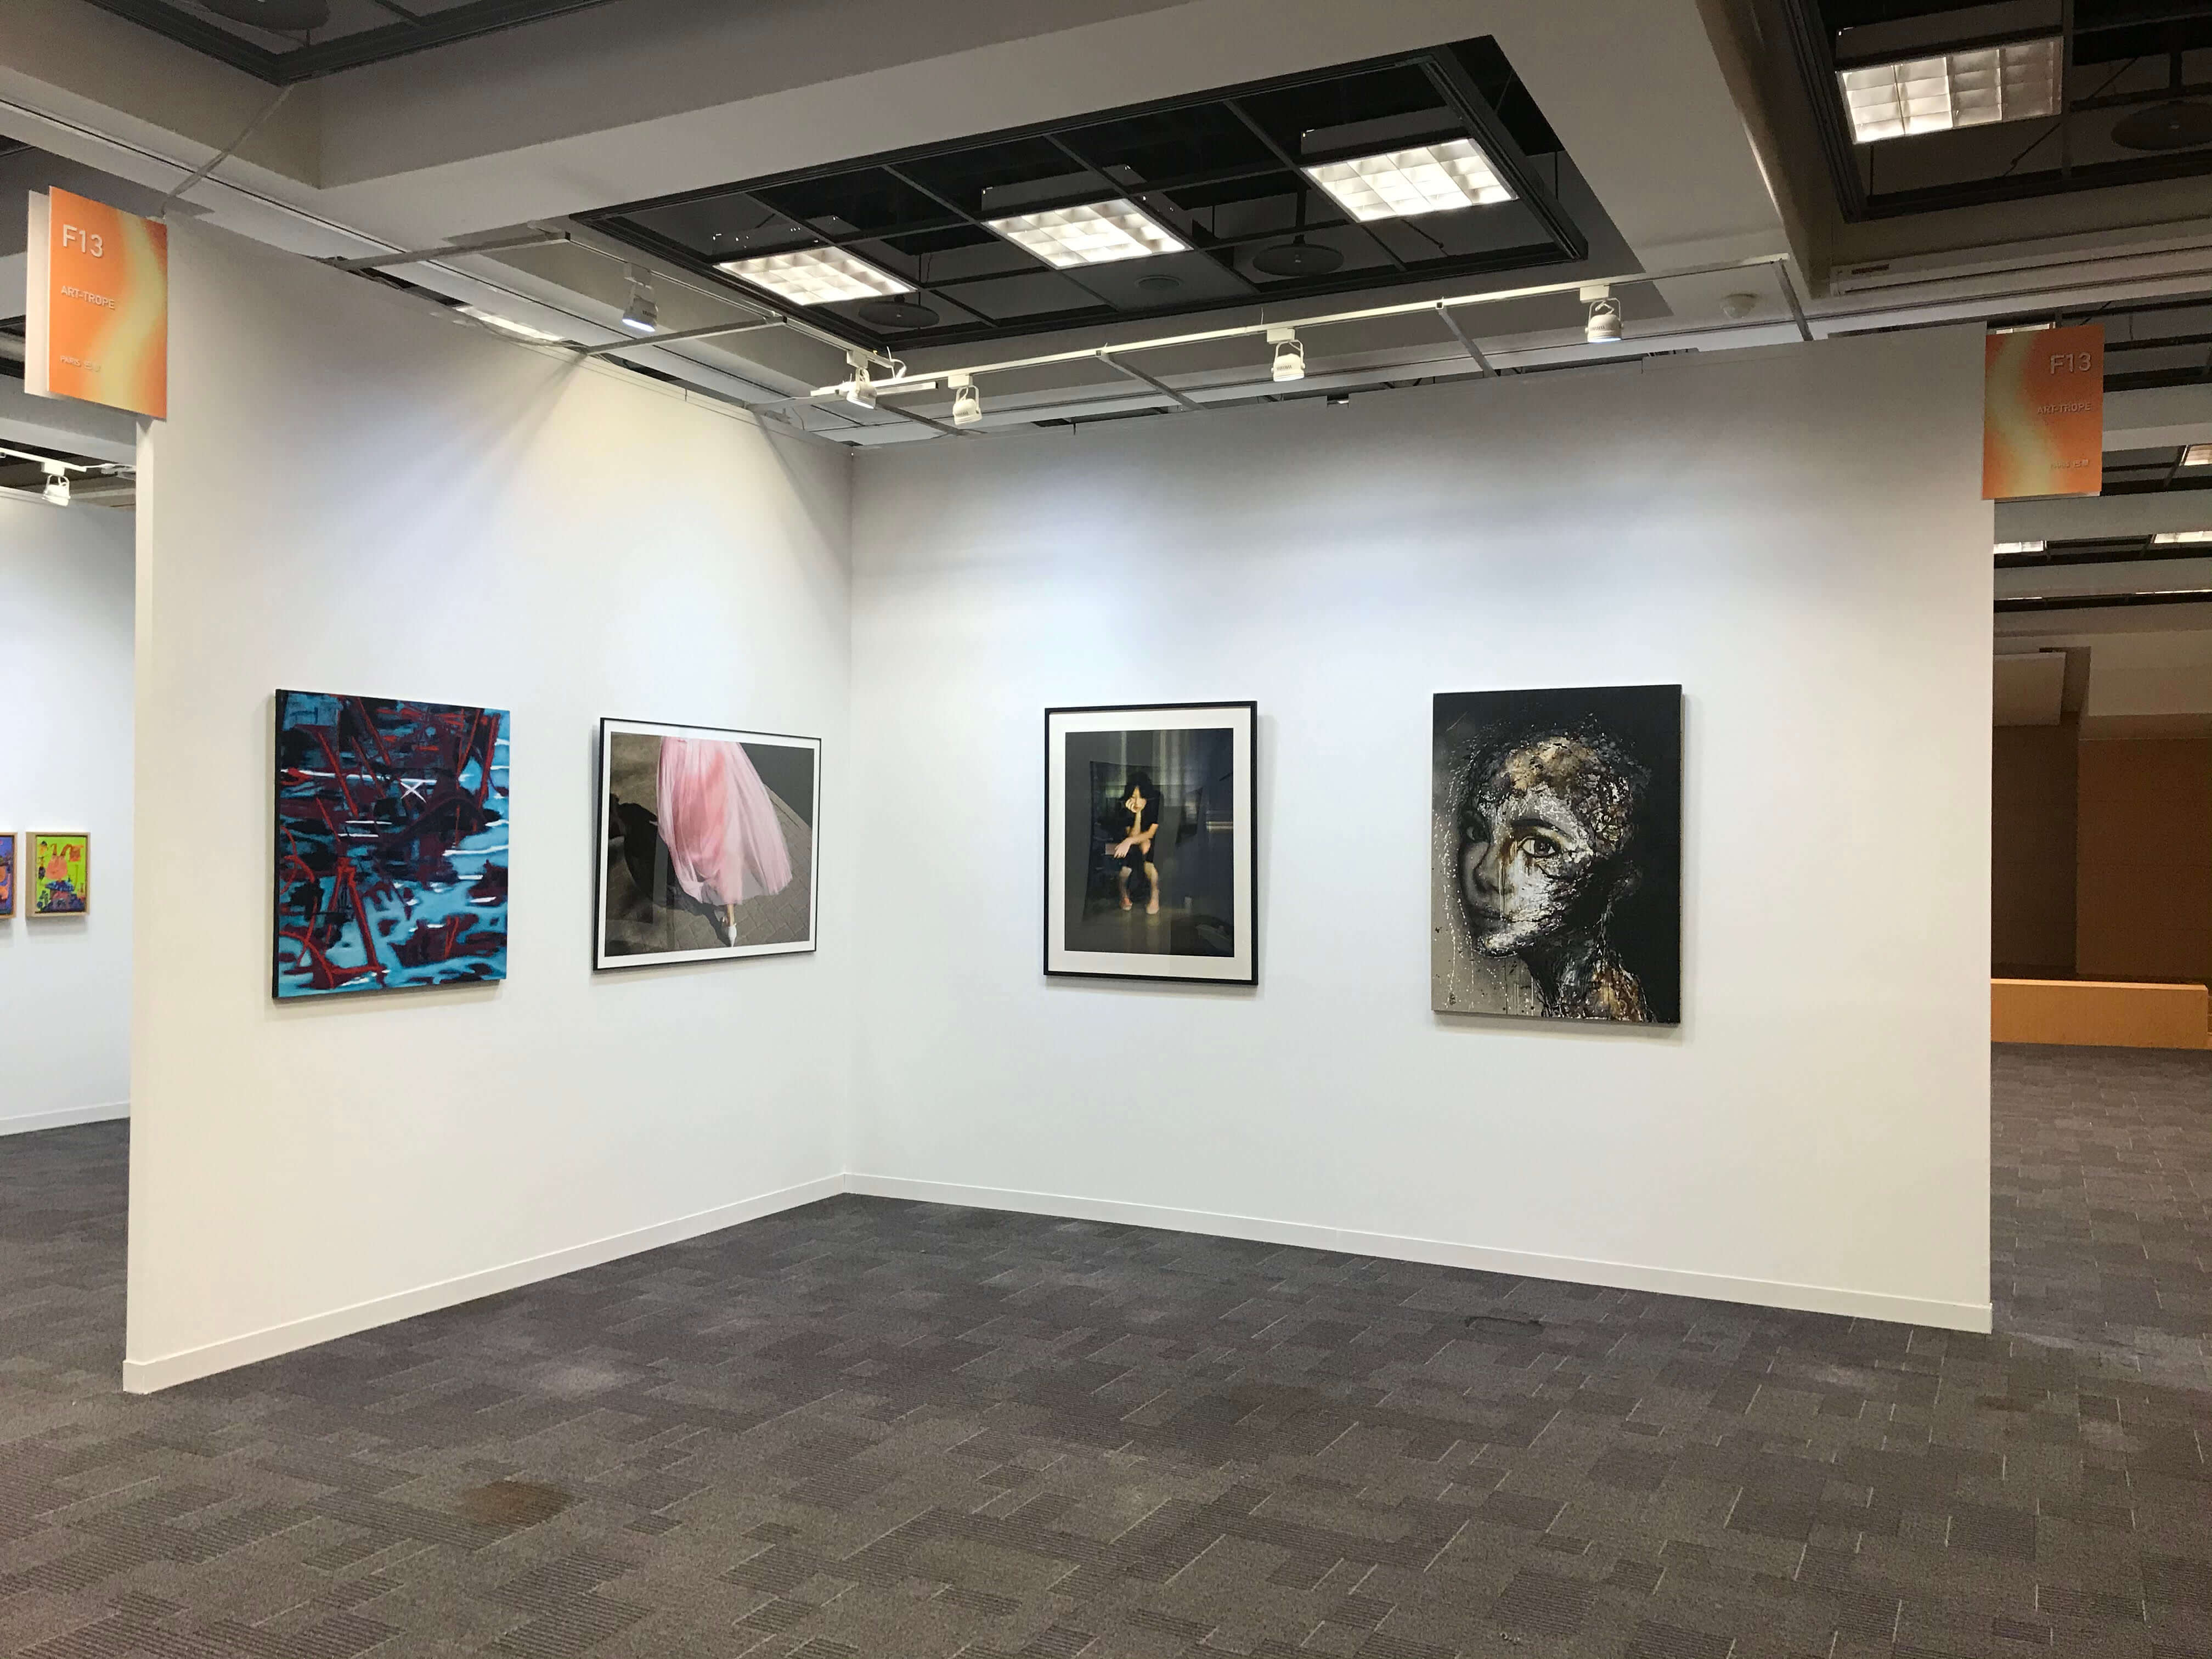 艺术博览会 - ART FUTURE - 台北未来艺 - 展出四位艺术家 - Art Trope画廊 - 台北 - 台湾